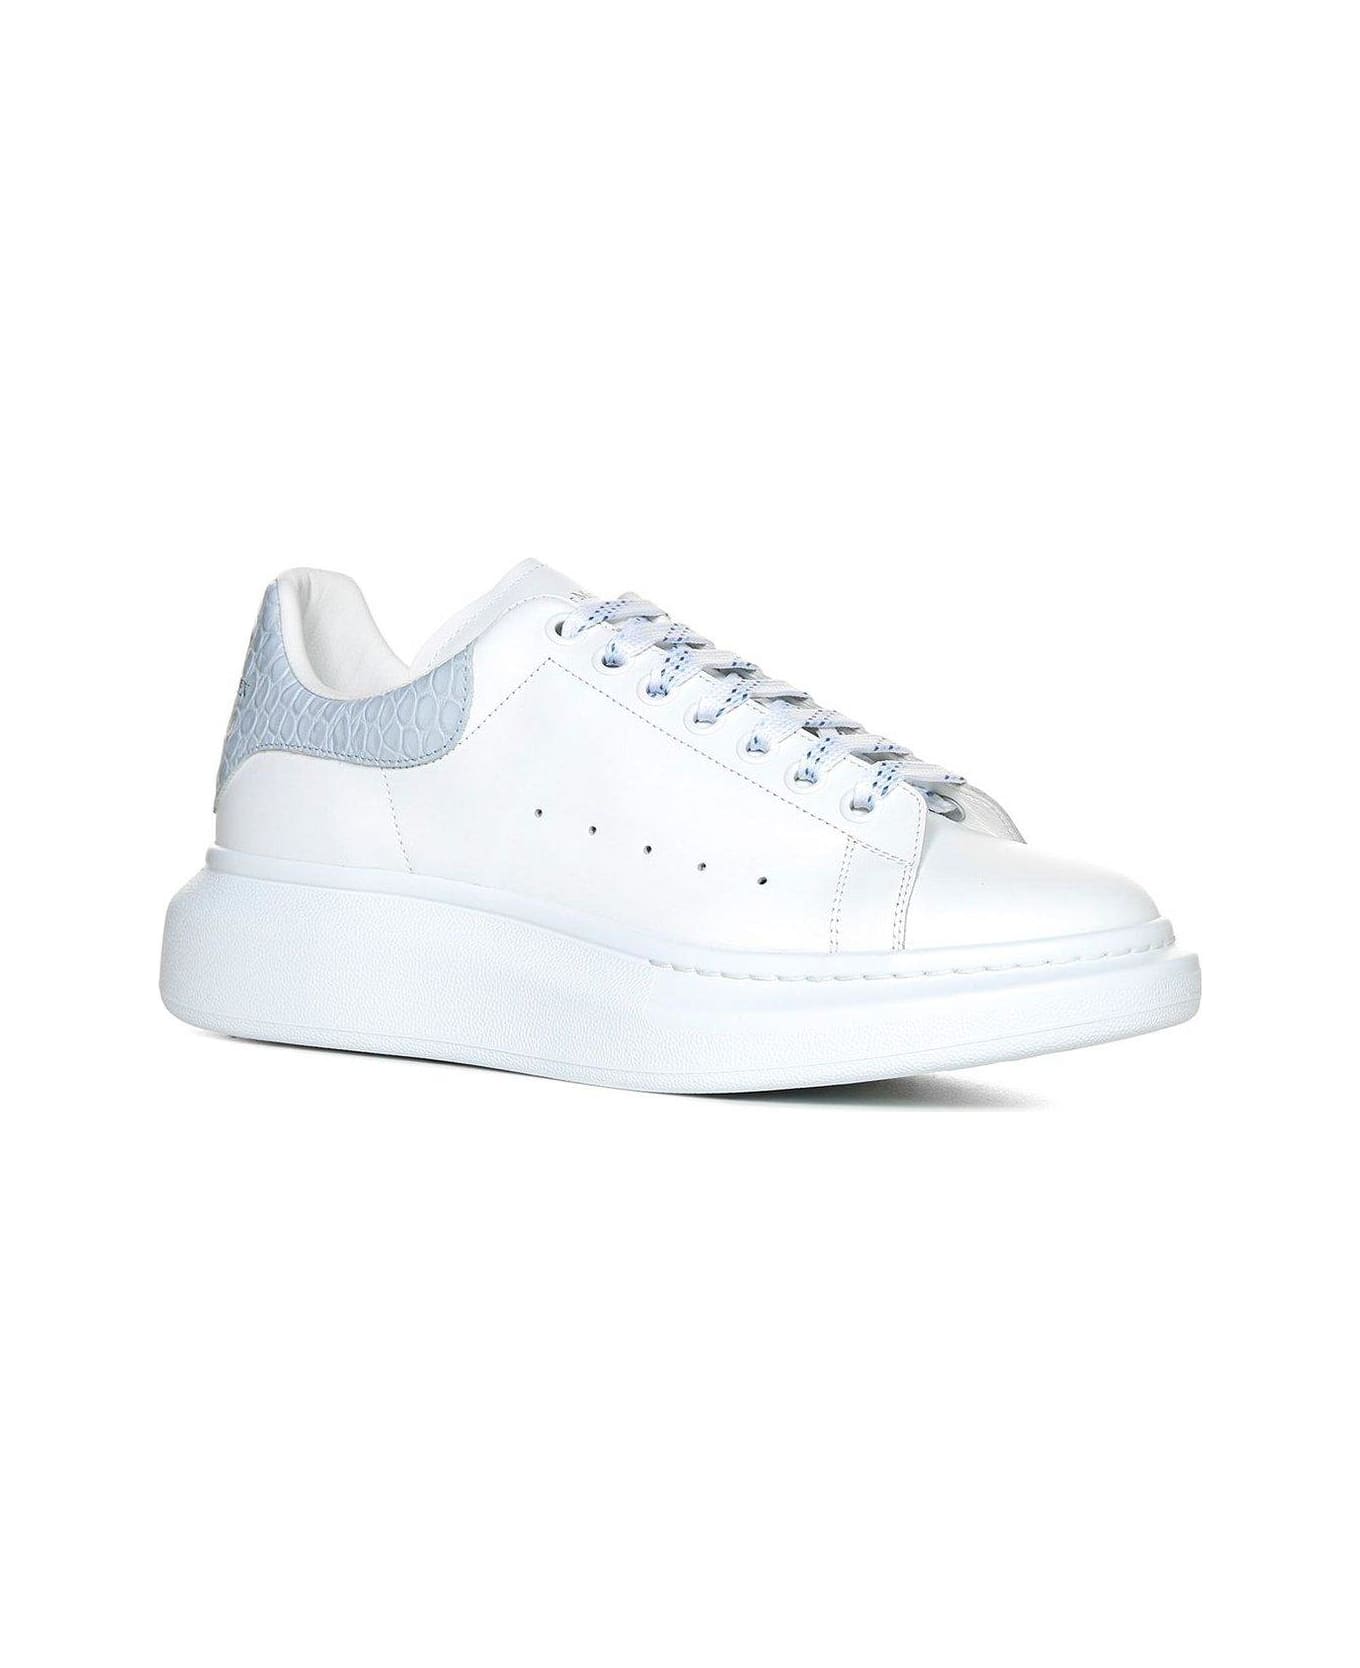 Alexander McQueen Larry Oversized Low-top Sneakers - White/blu